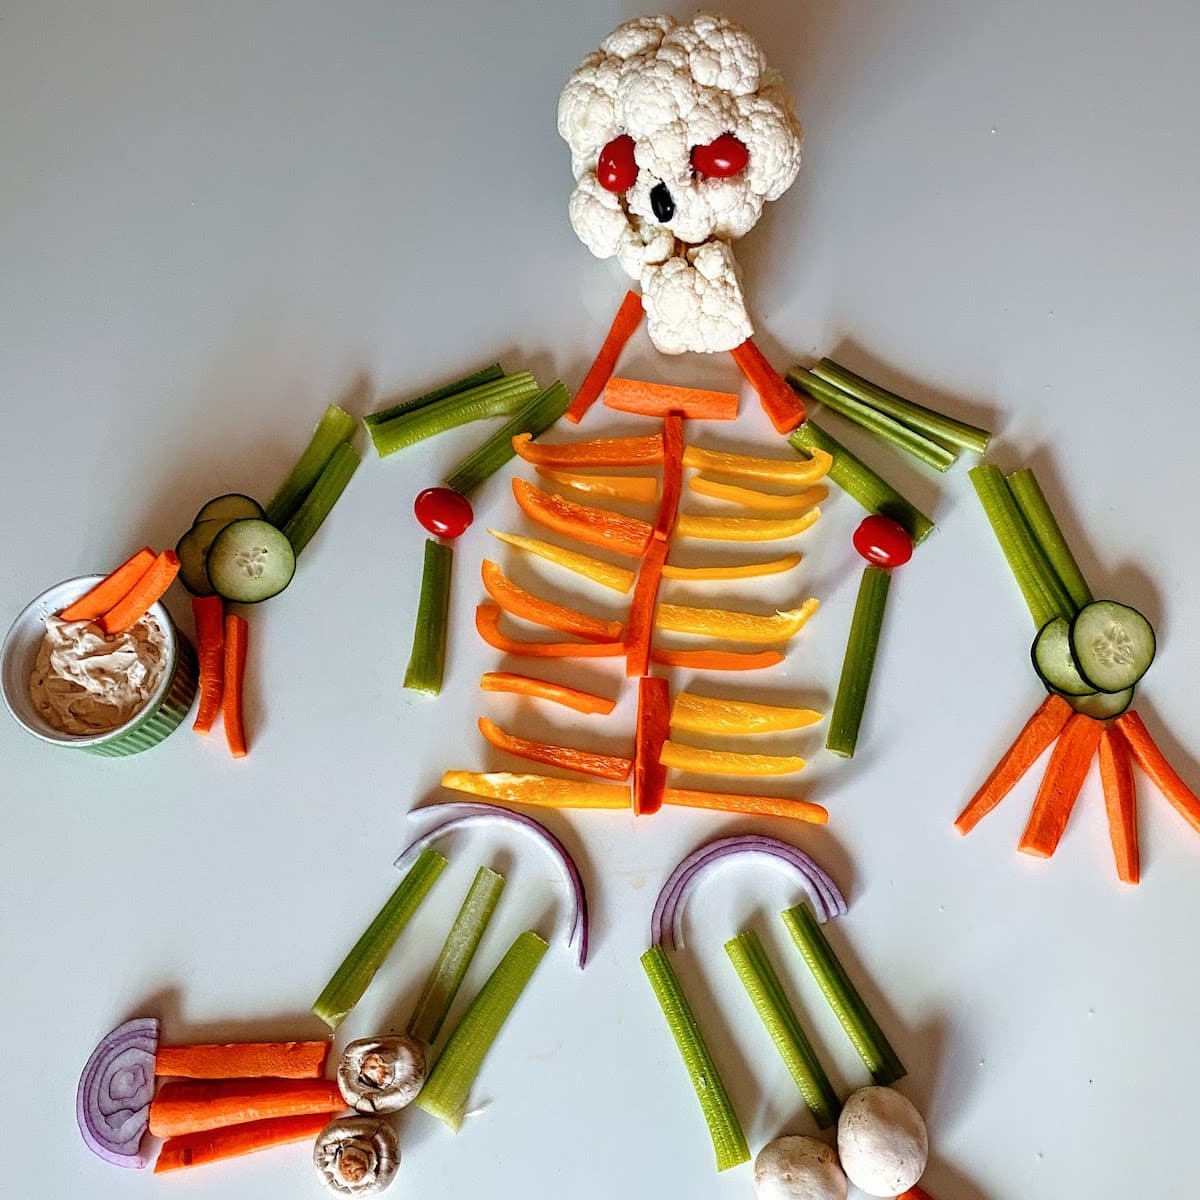 Skeleton veggie tray on table